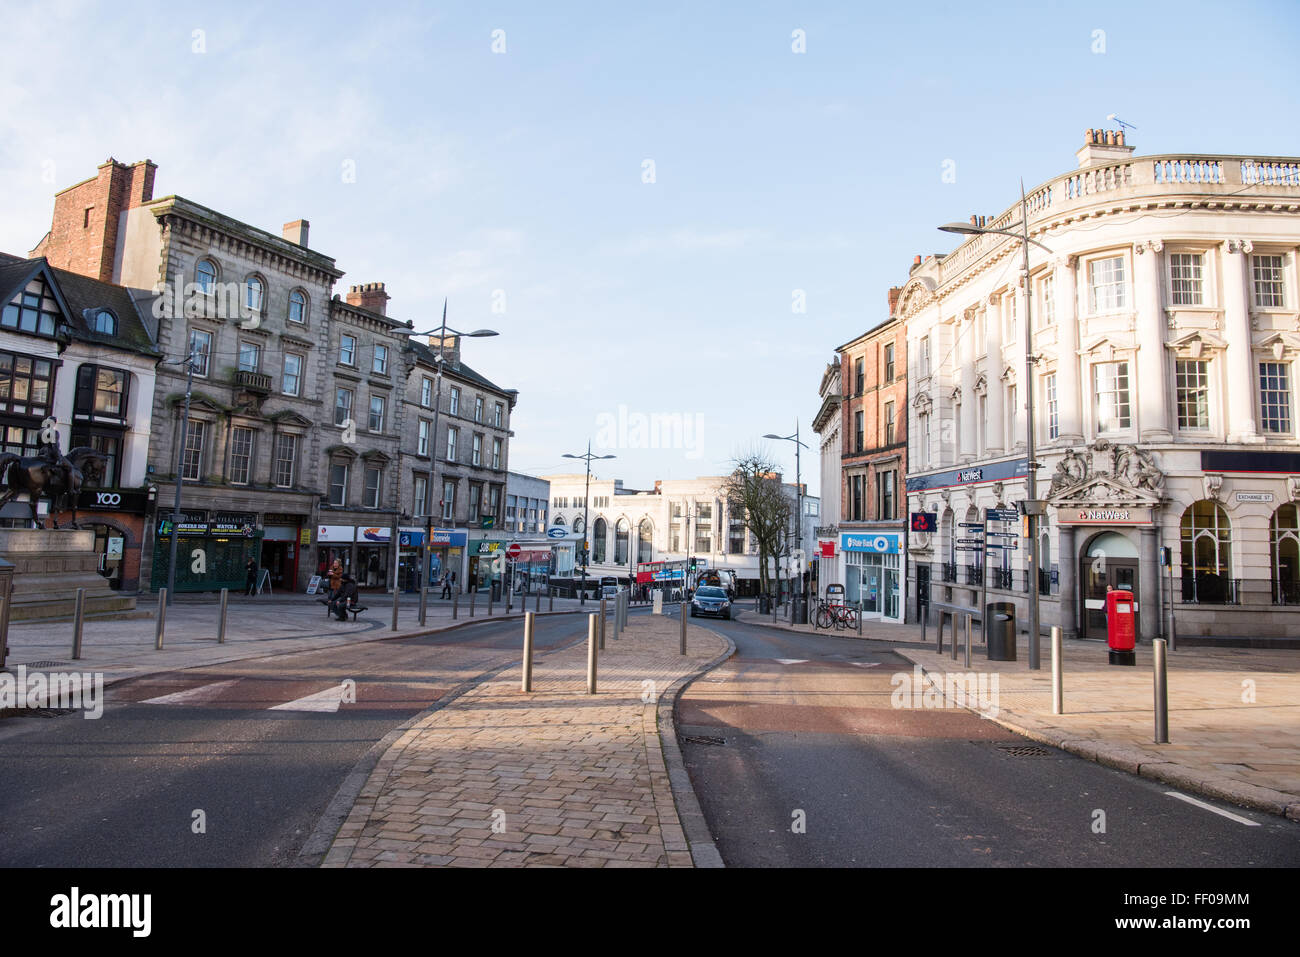 Vista del centro de la ciudad Wolverhampton de Queen's Square, temprano en la mañana sin tráfico Foto de stock